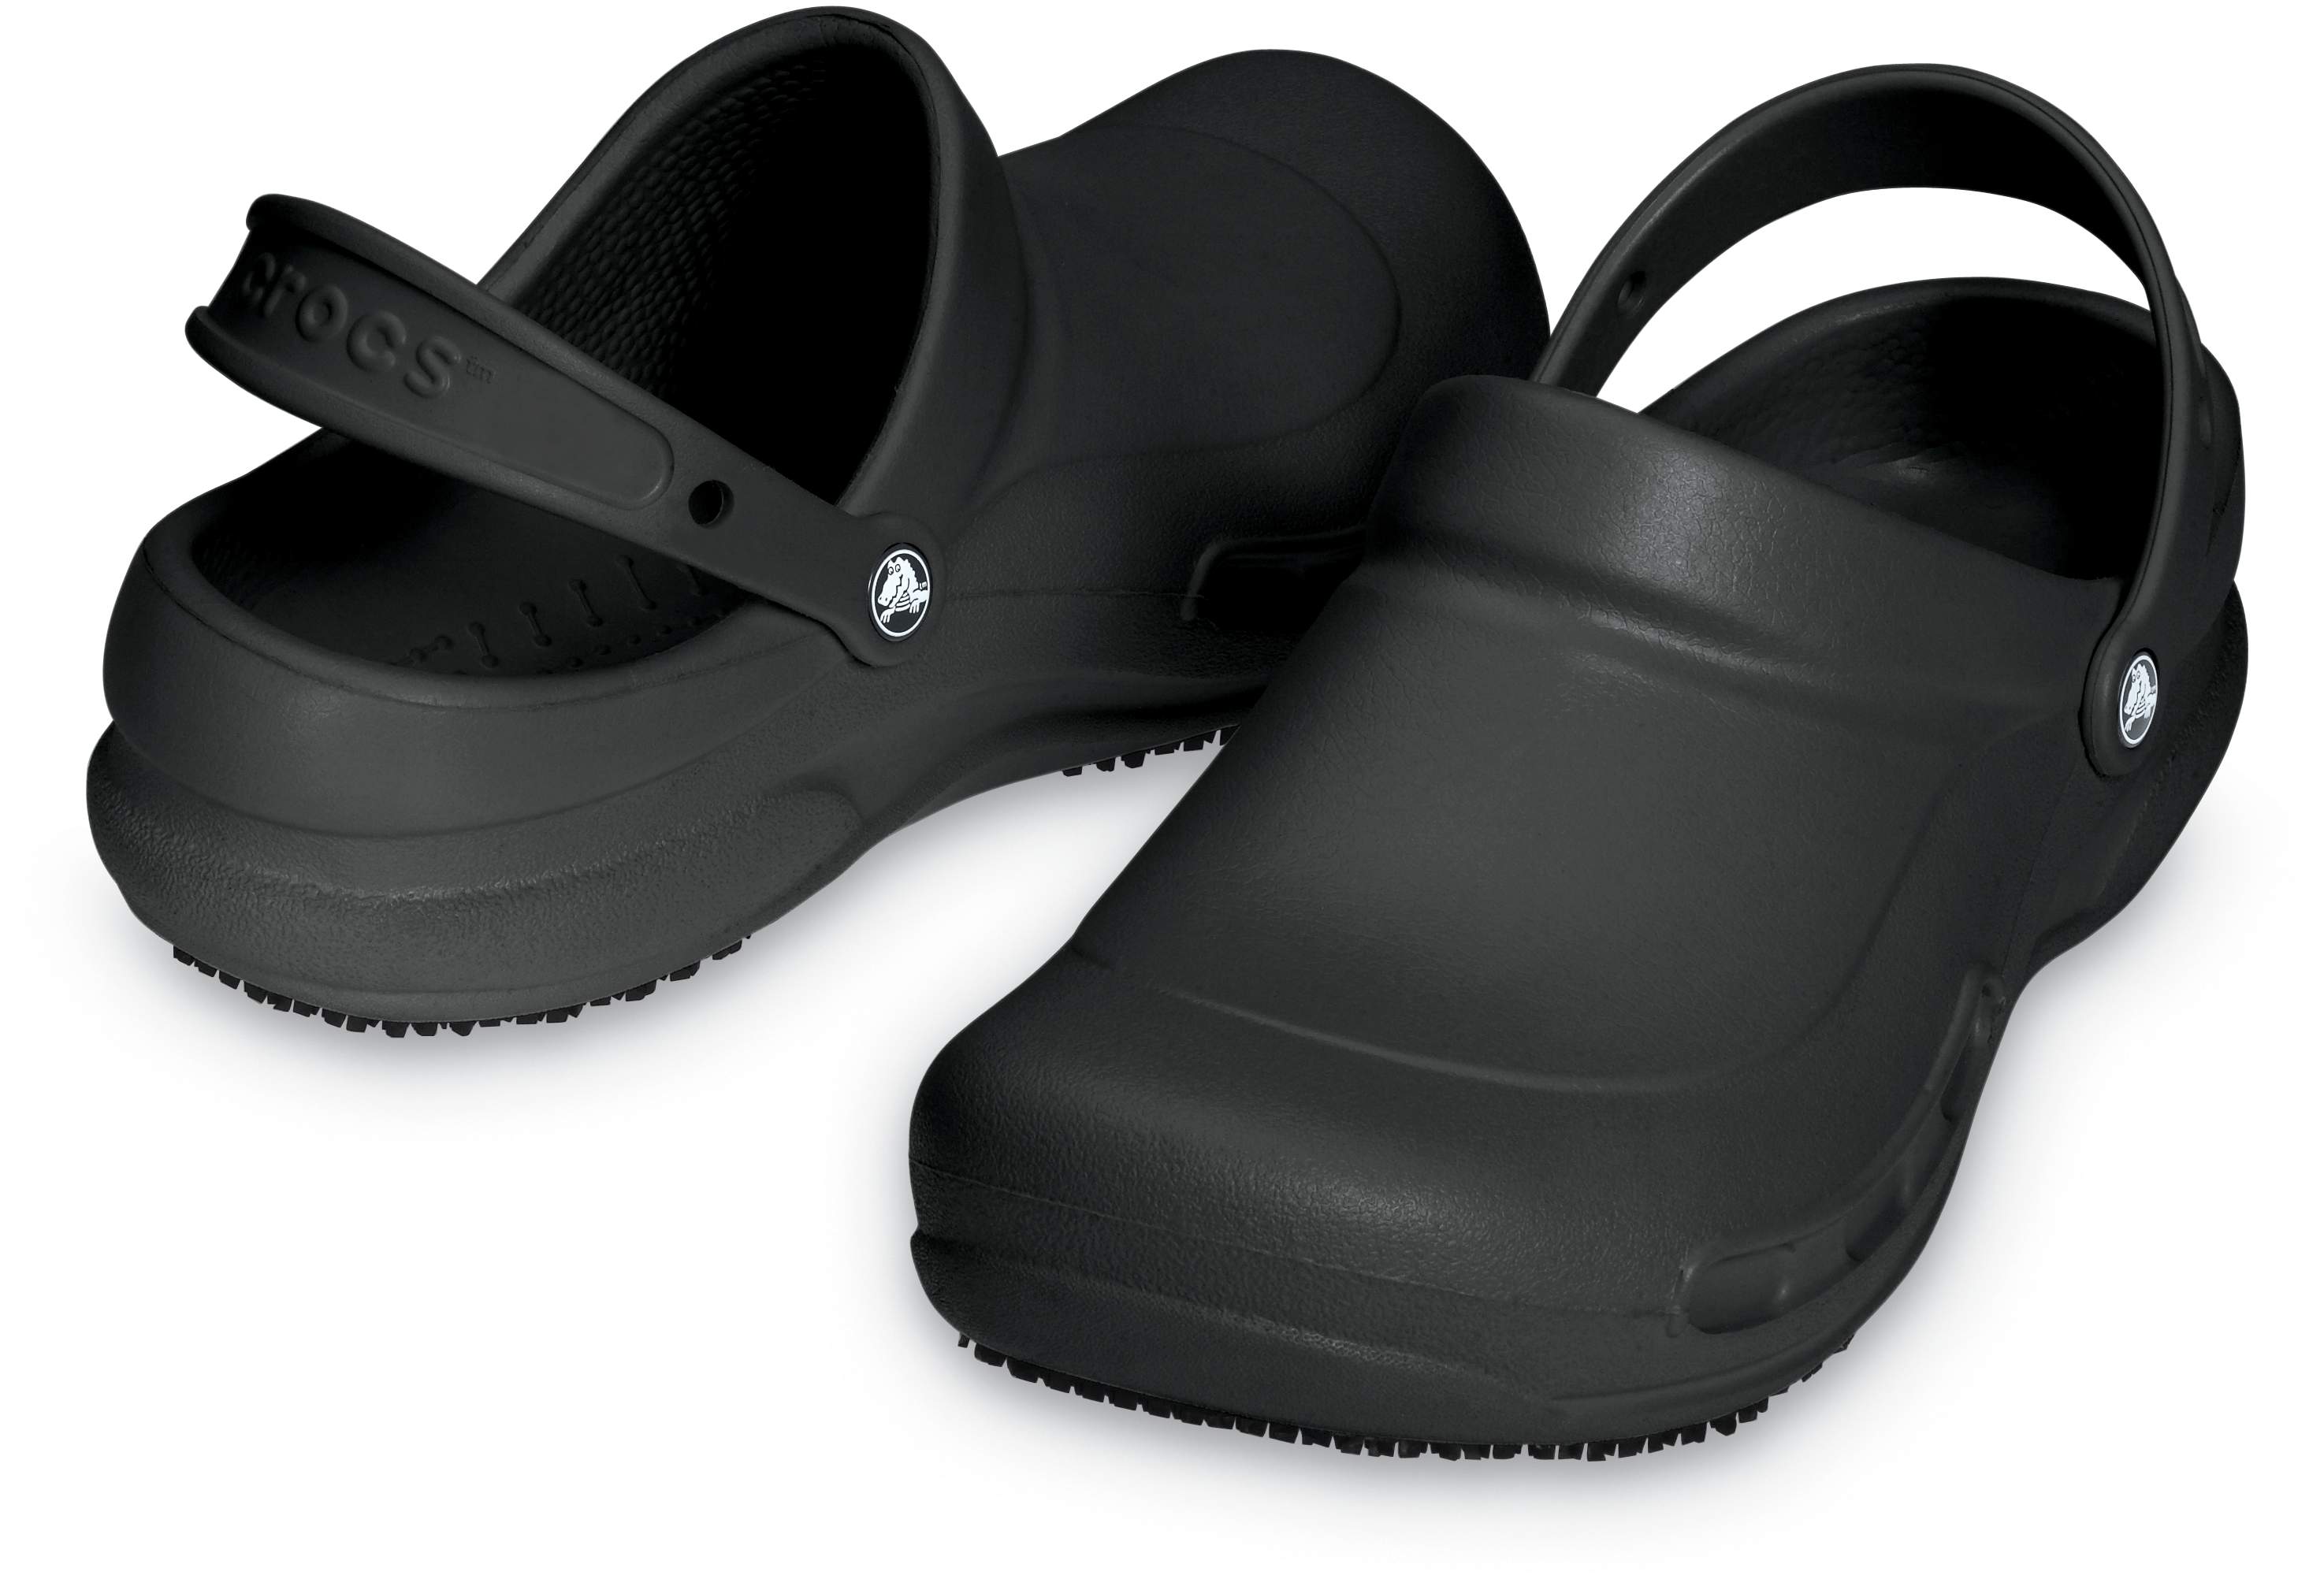 crocs slip resistant shoes